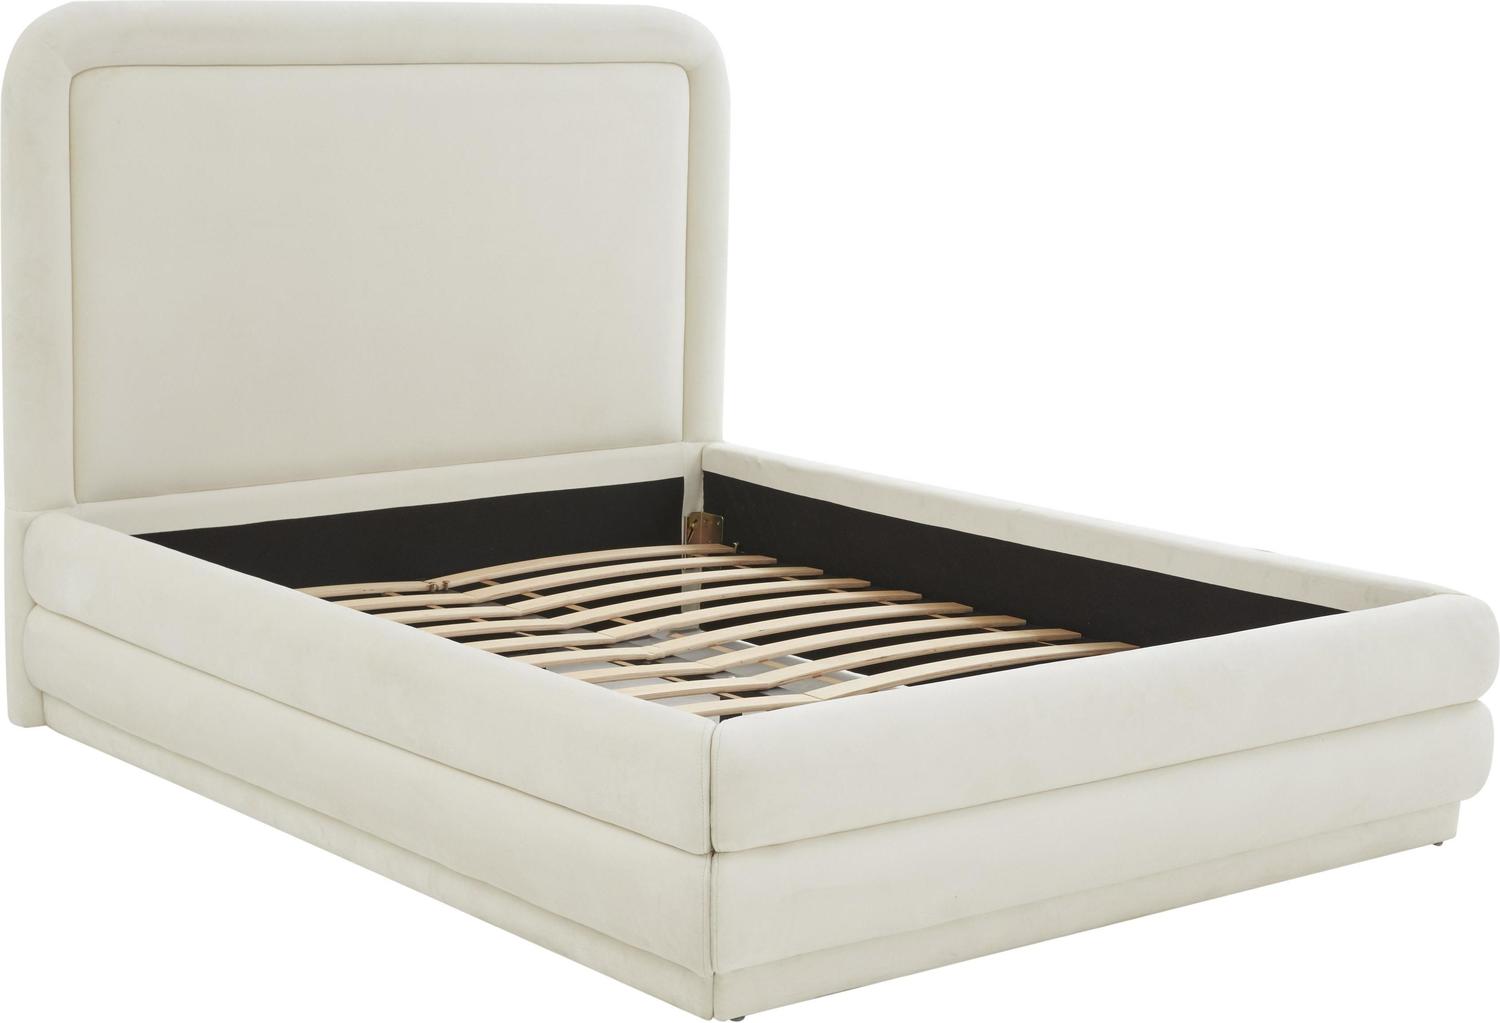 king size metal platform bed frame Tov Furniture Beds Cream